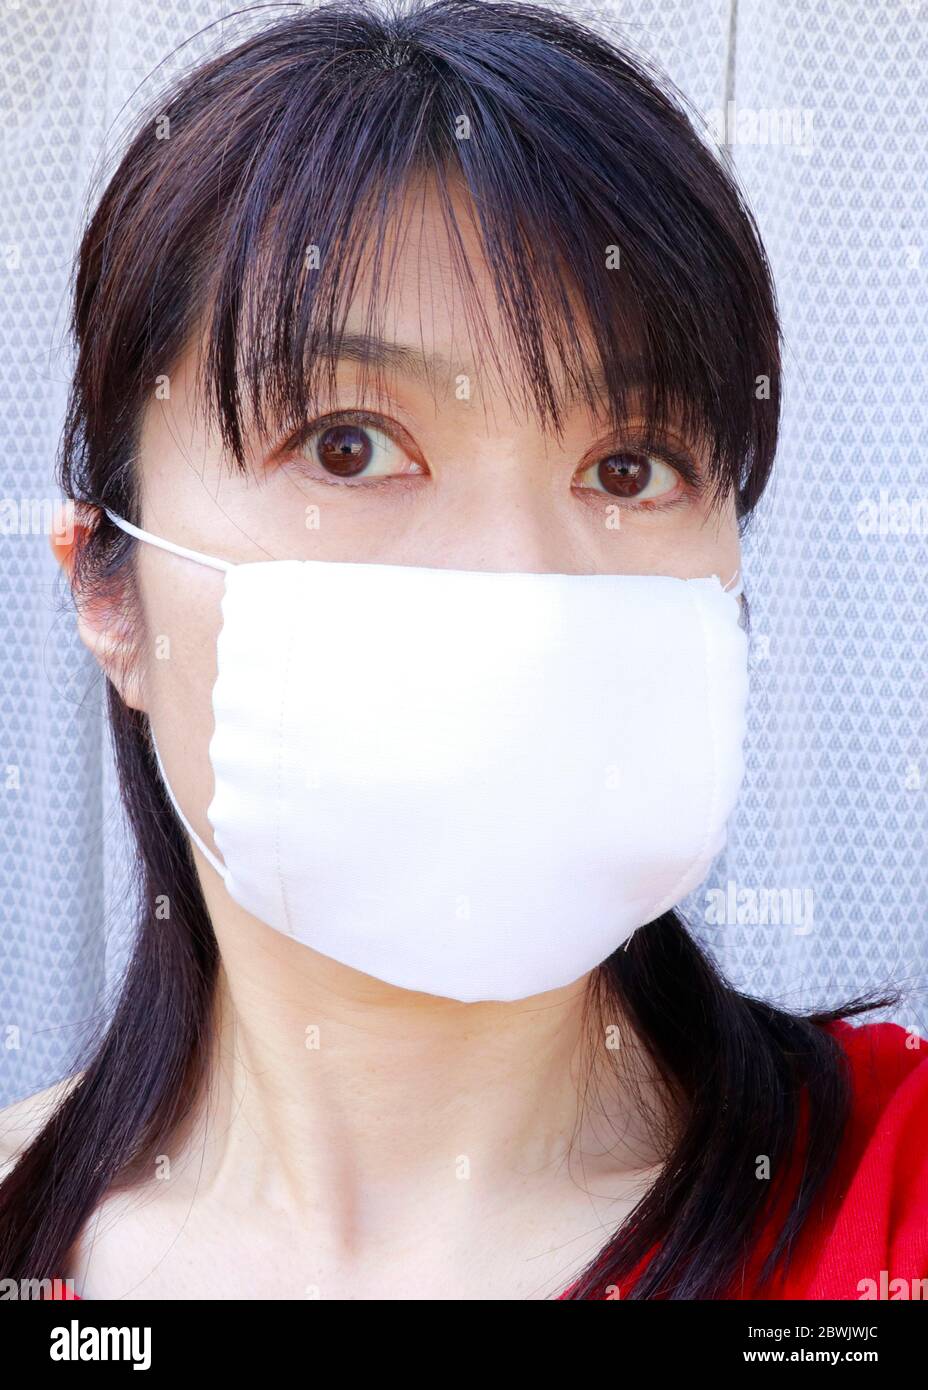 La maschera conosciuta come Abenomask ha finalmente iniziato la distribuzione alla fine di maggio. Il primo ministro Abe ha annunciato di fornire 2 maschere di tessuto per ogni casa 2 aprile. Foto Stock